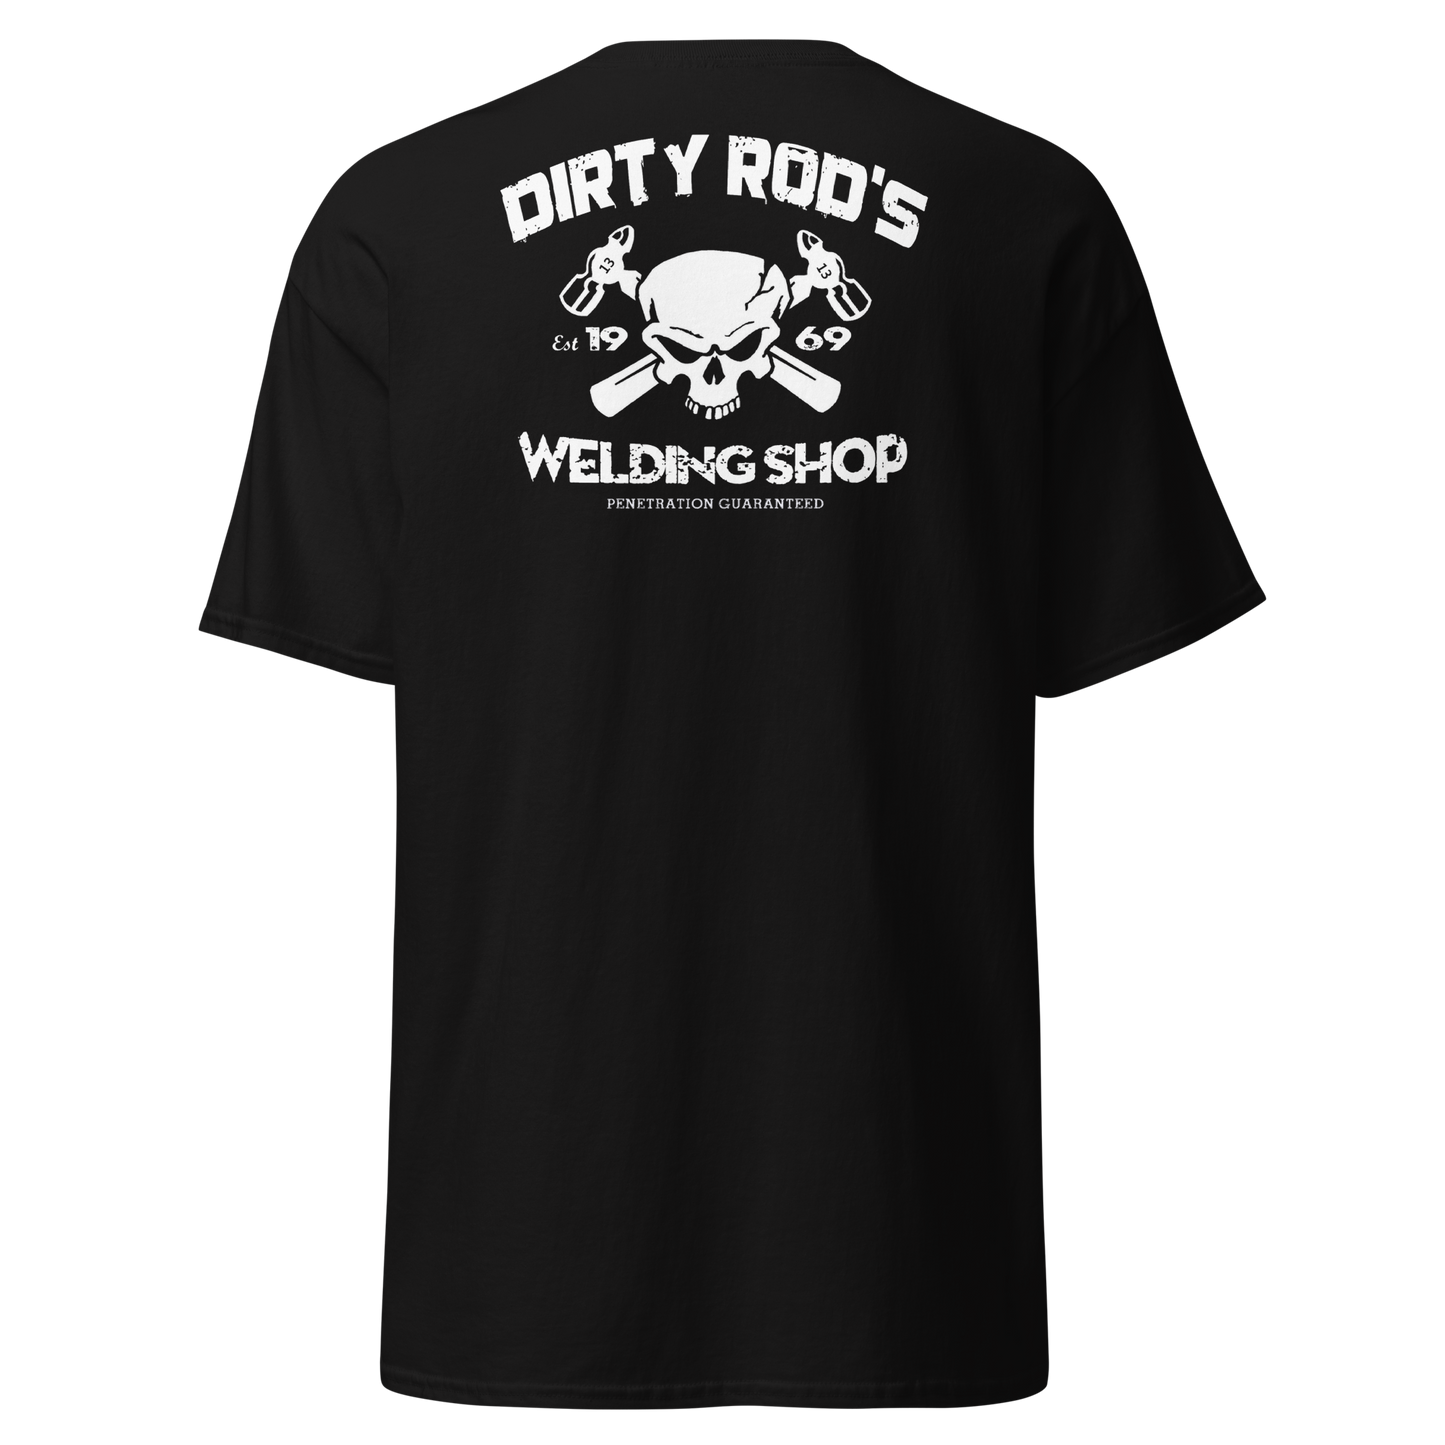 Dirty Rod's Welding Shop T-Shirt